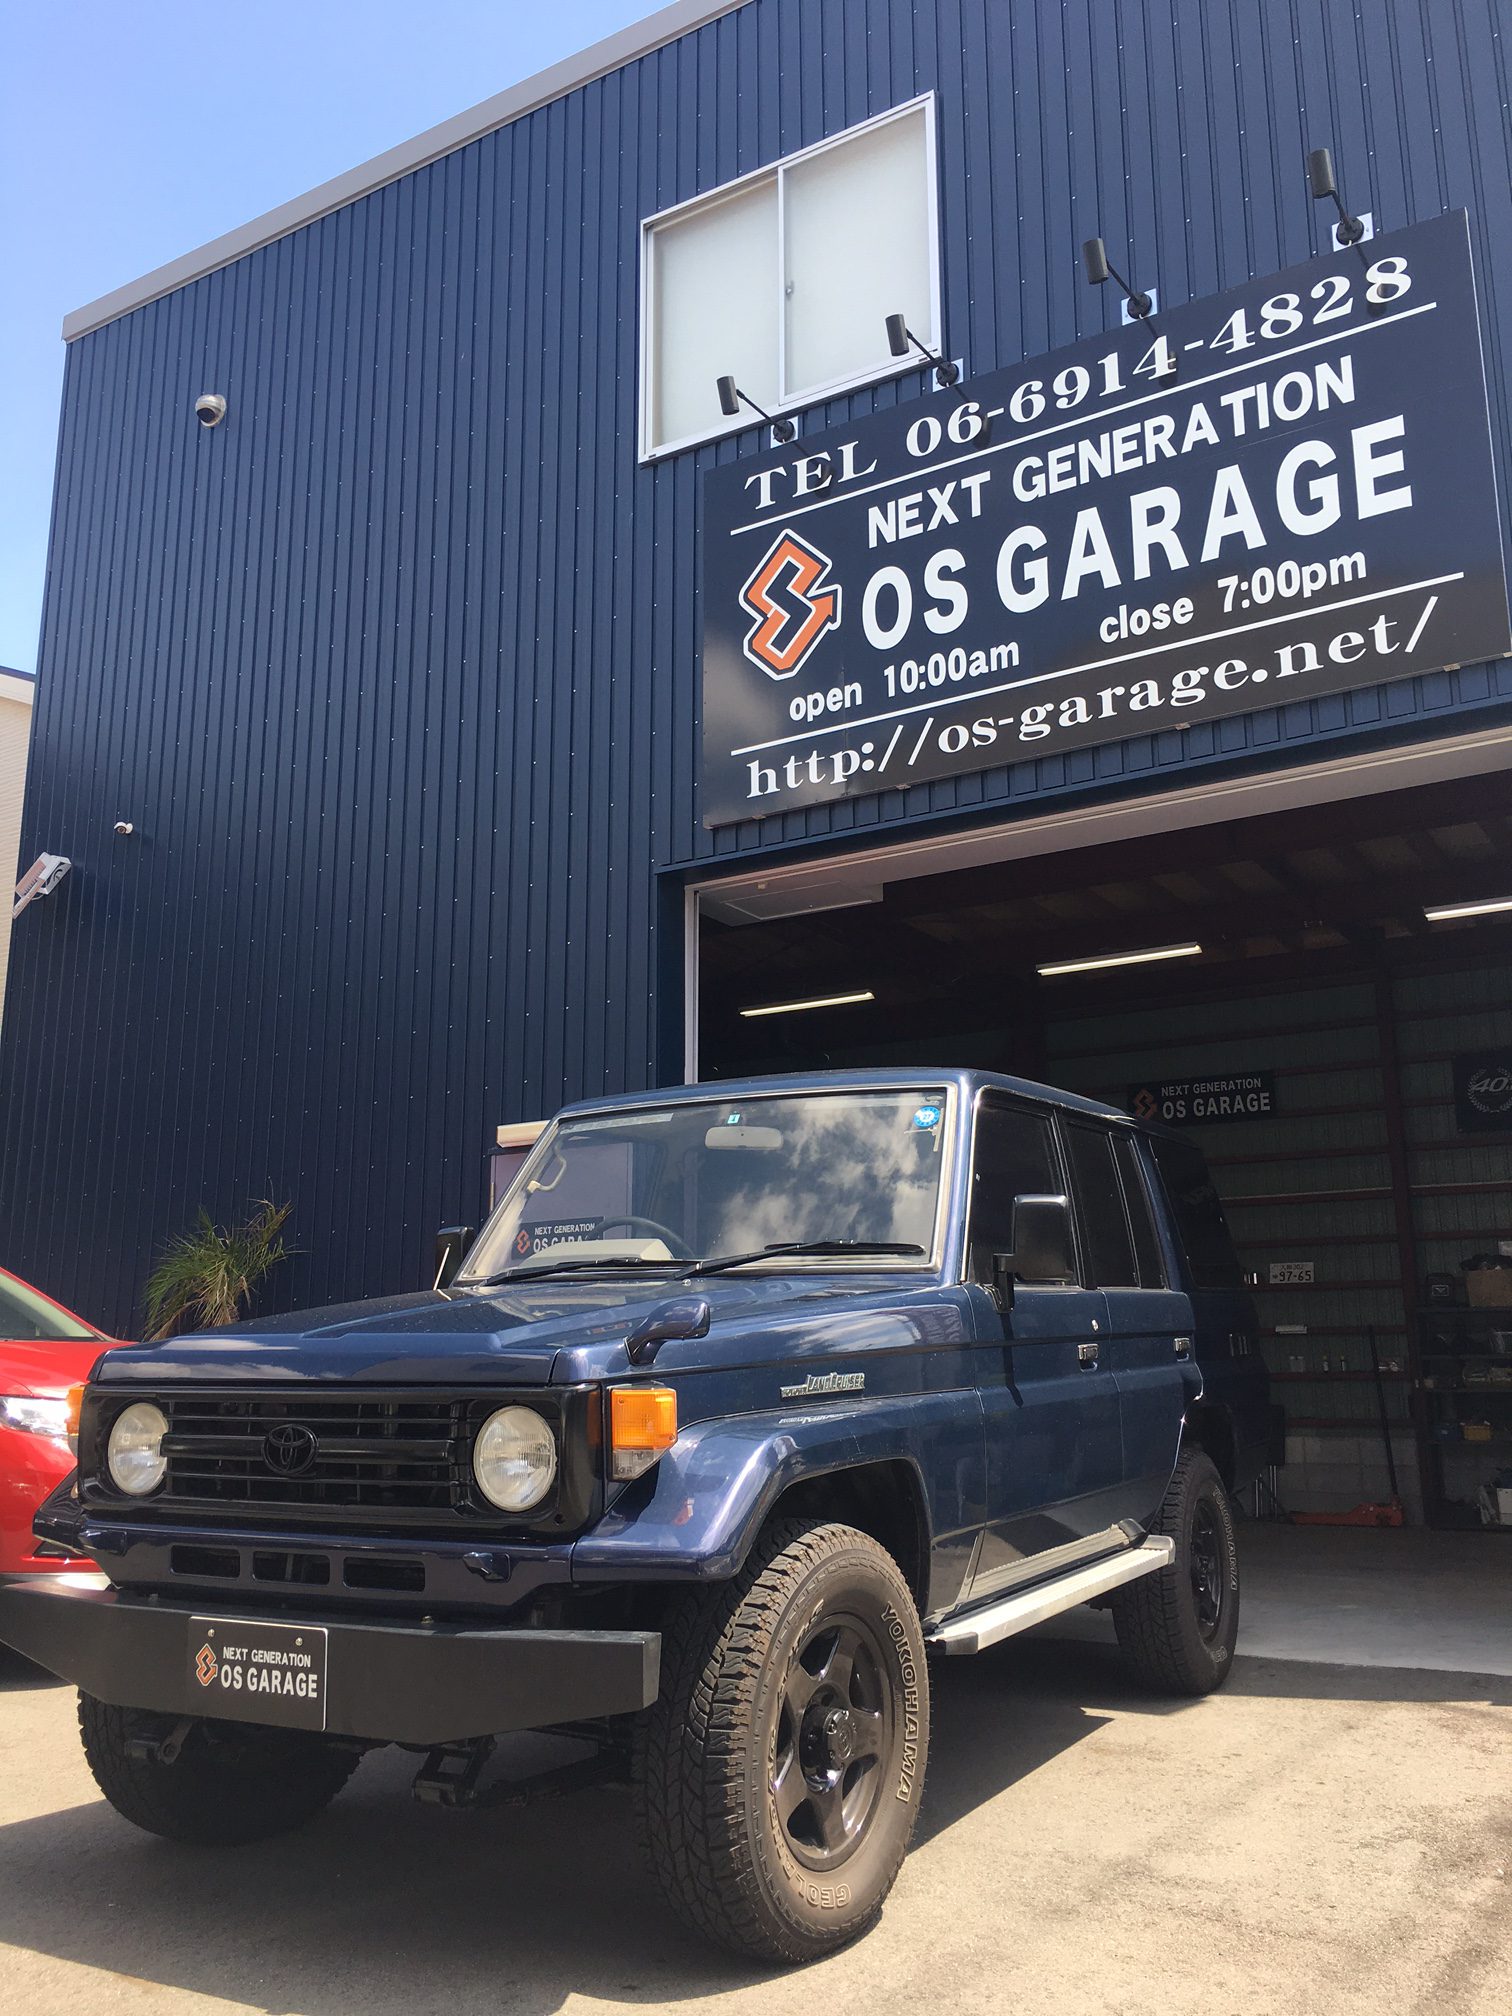 Os Garage X Trail専門店 新車 中古車販売 買取 カスタマイズ企画 各種メンテナンス